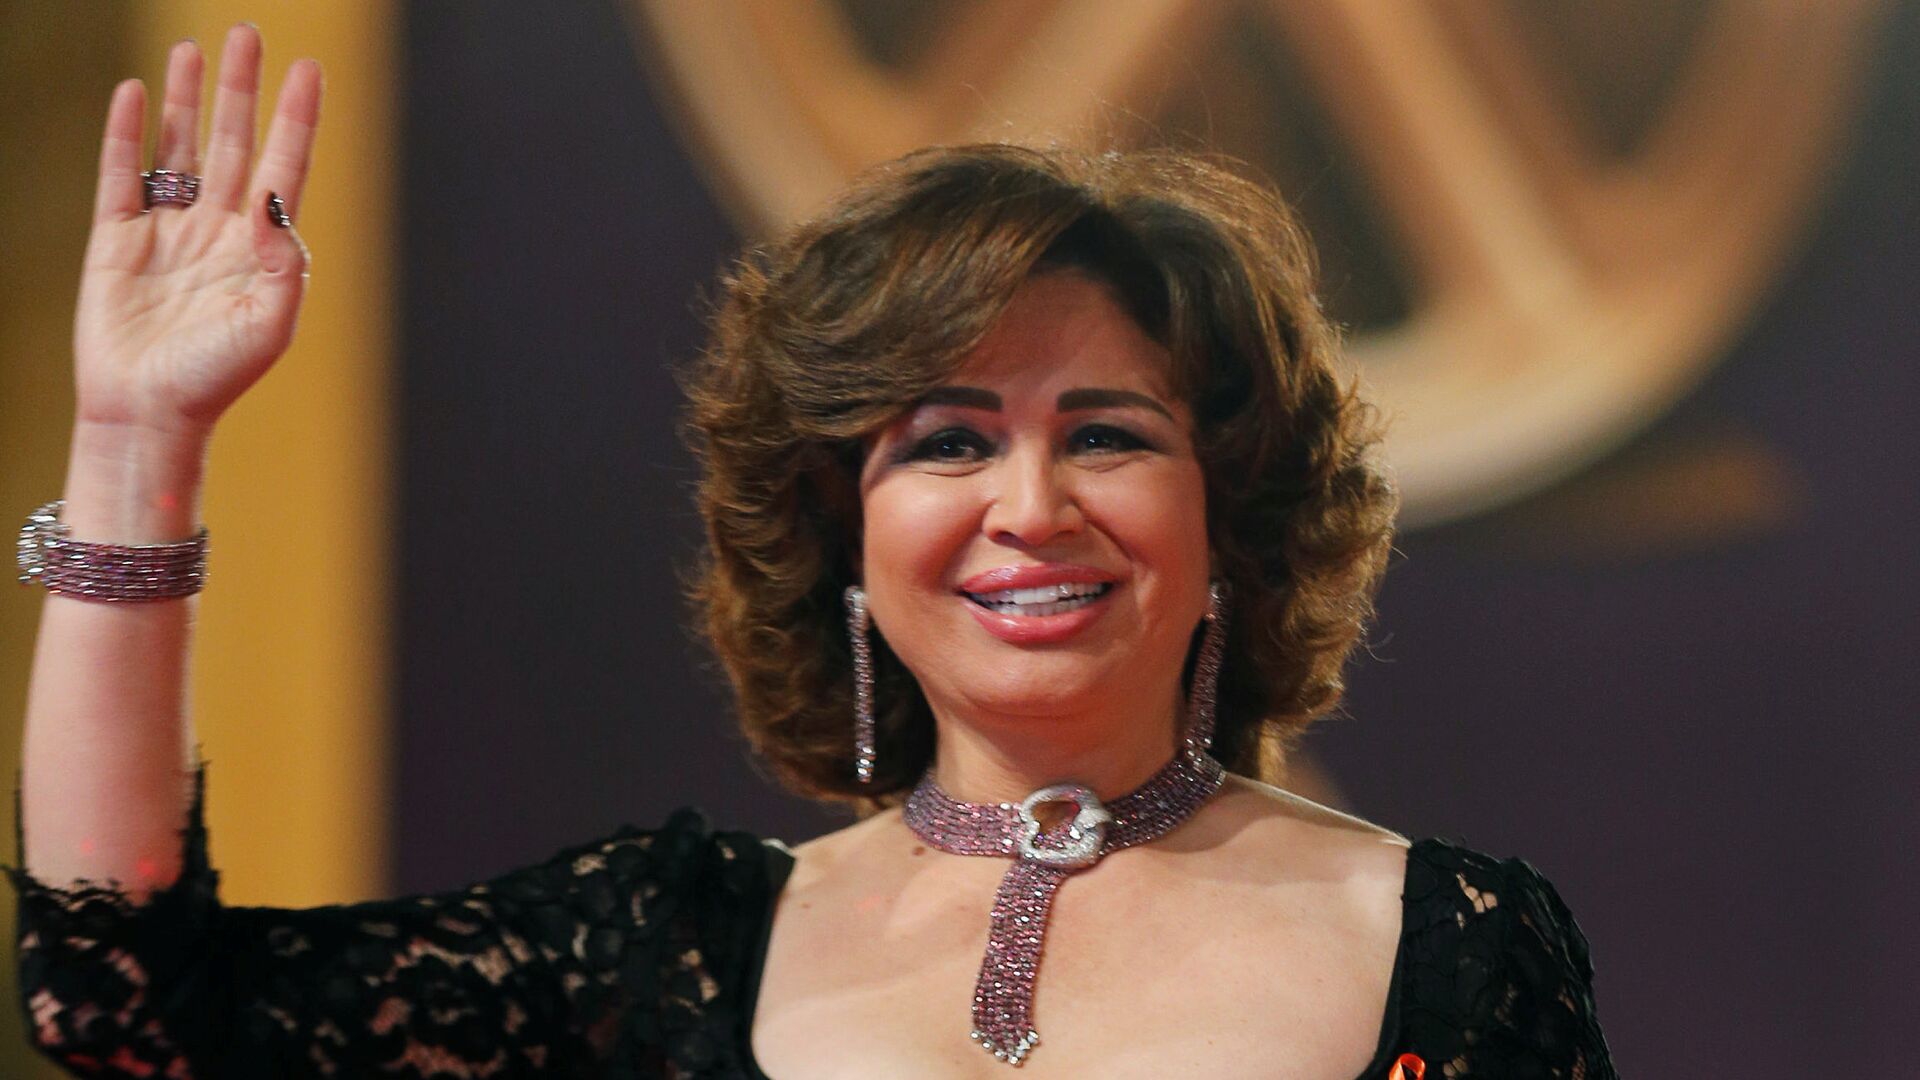  الممثلة المصرية إلهام شاهين خلال مهرجان القاهرة السينمائي الـ 39، مصر 21 نوفمبر/ كانون الأول 2017 - سبوتنيك عربي, 1920, 19.03.2021